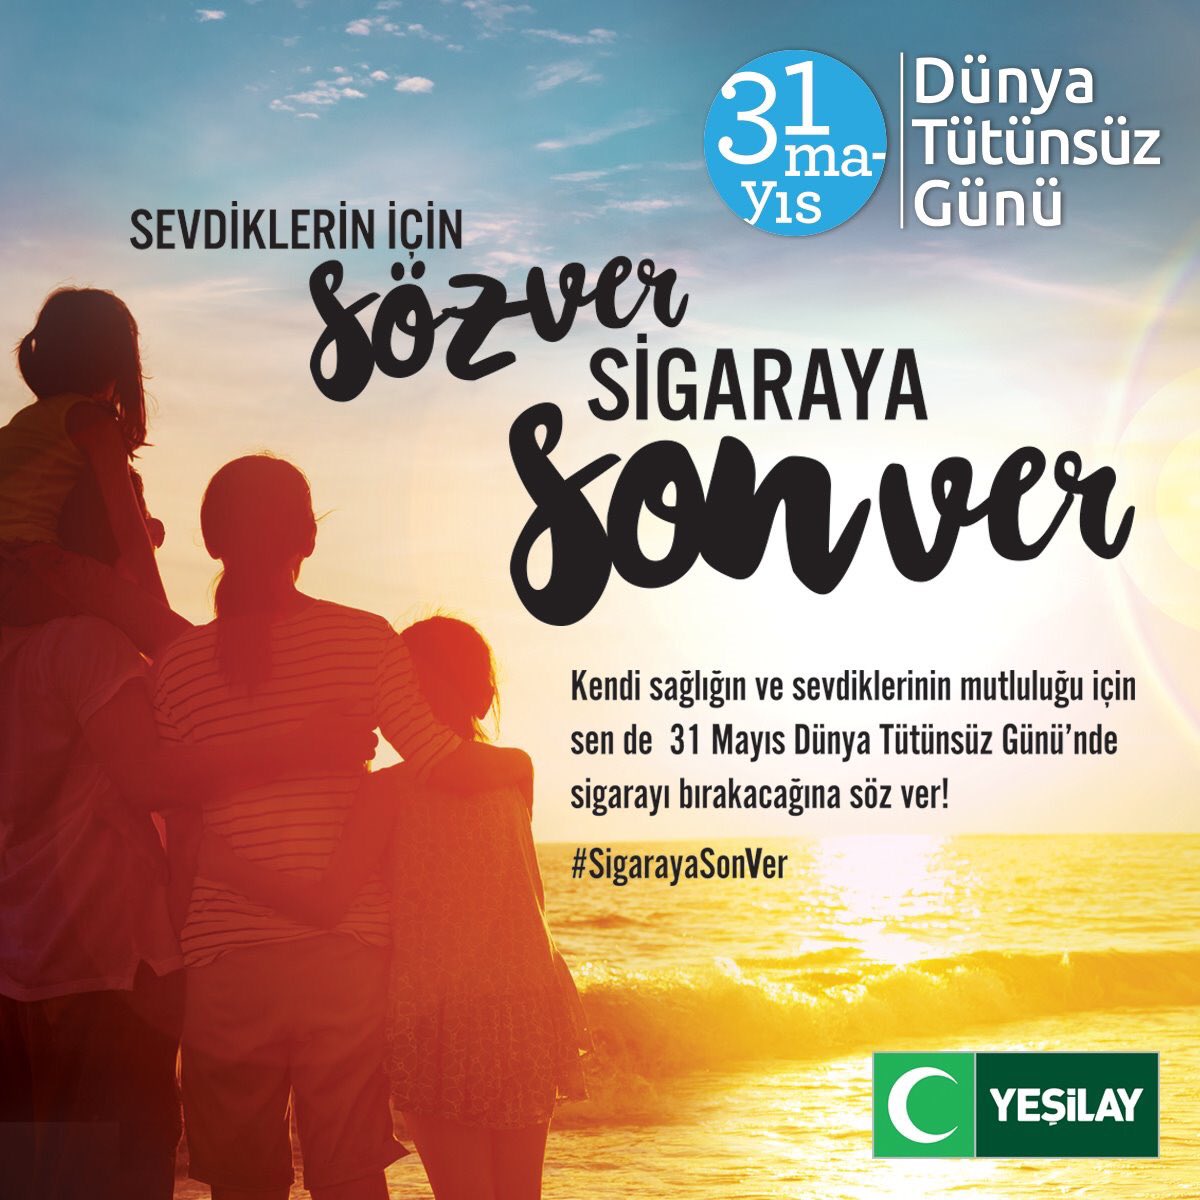 Ramazan ayına denk gelen #31MayısDünyaTütünsüzGünü sigarayı bırakmaya ‘söz’ vermek için büyük bir fırsat. 
#SigarayaSonVer